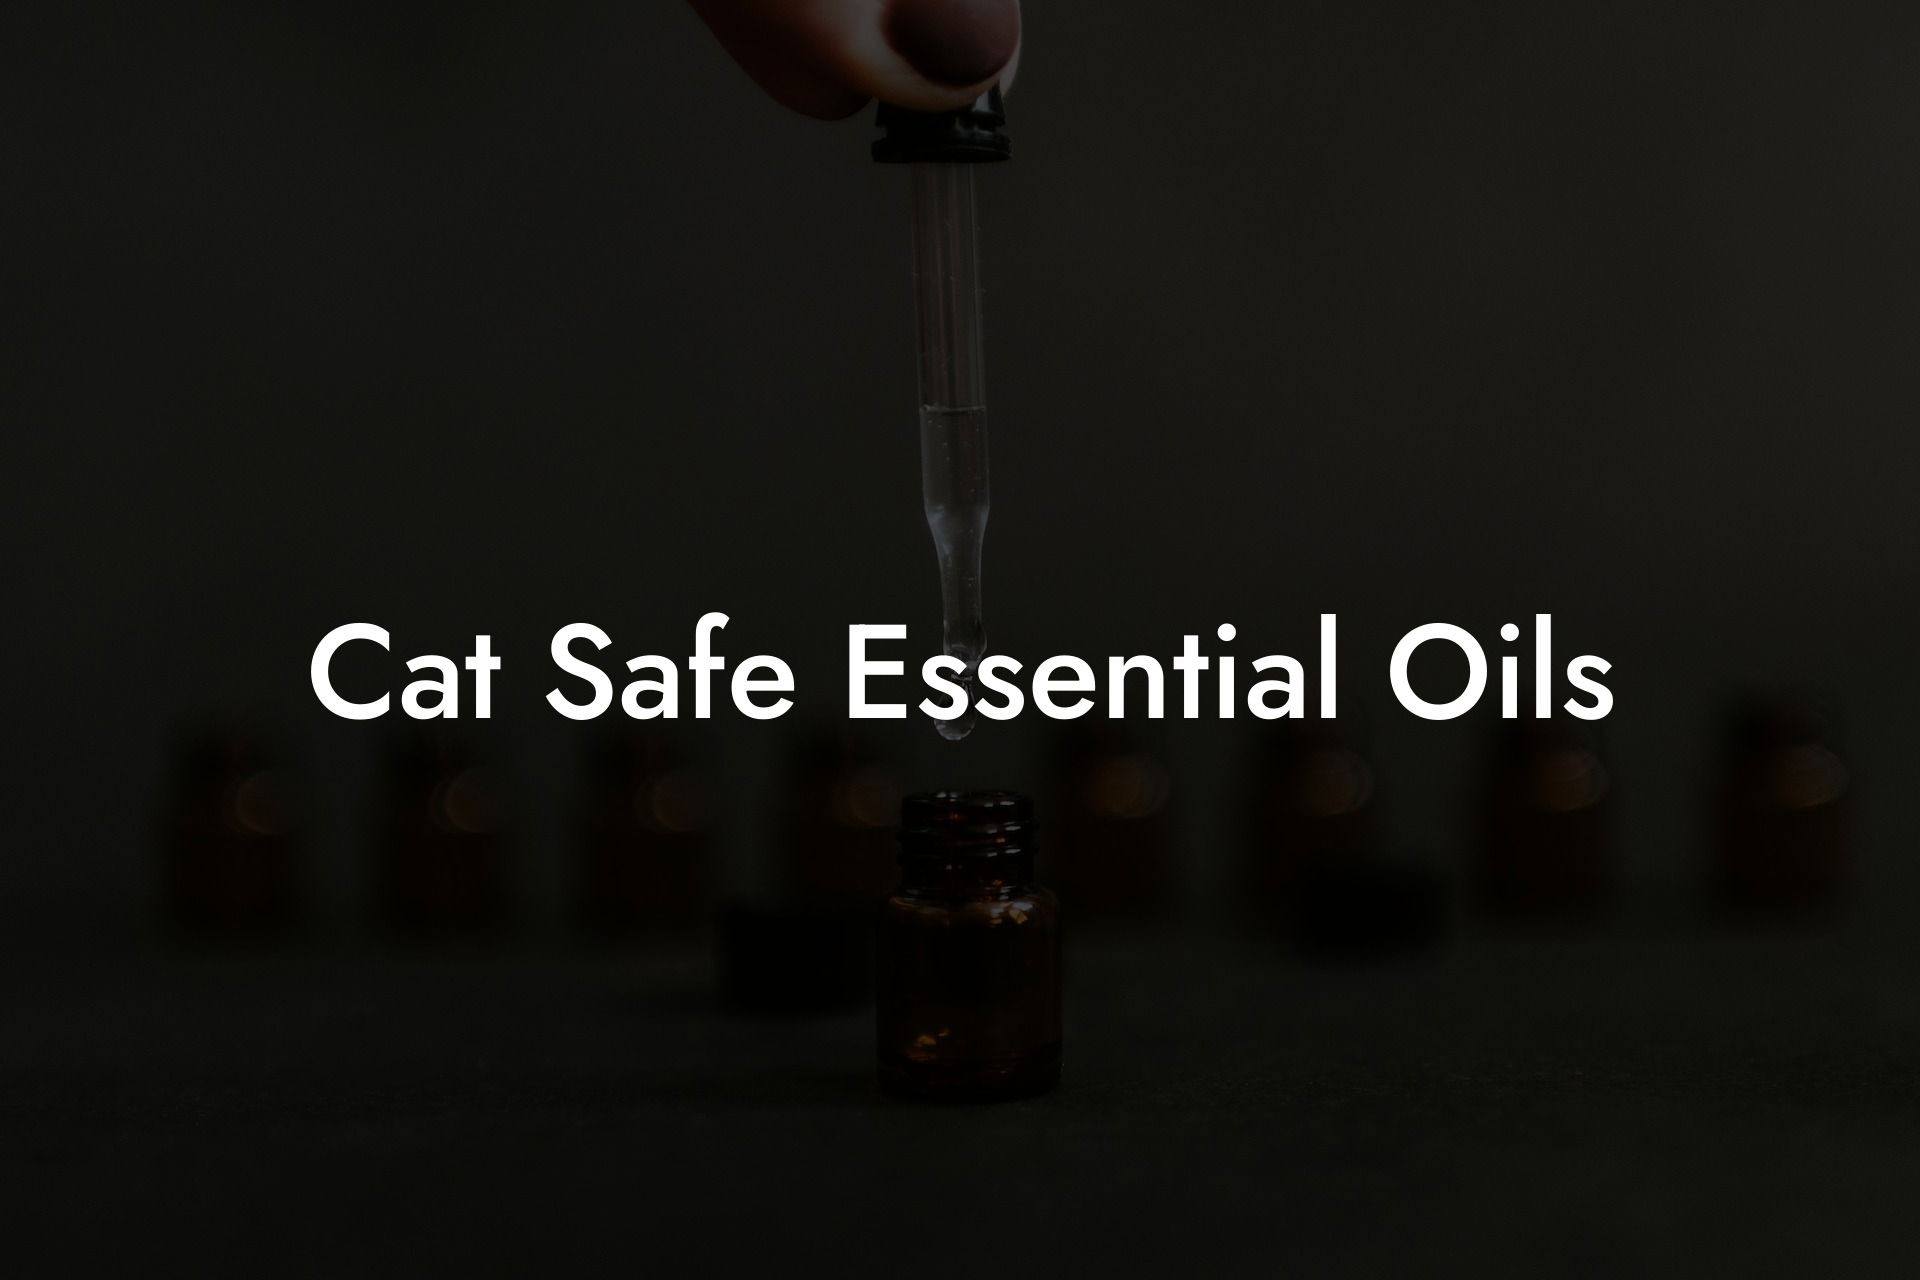 Cat Safe Essential Oils